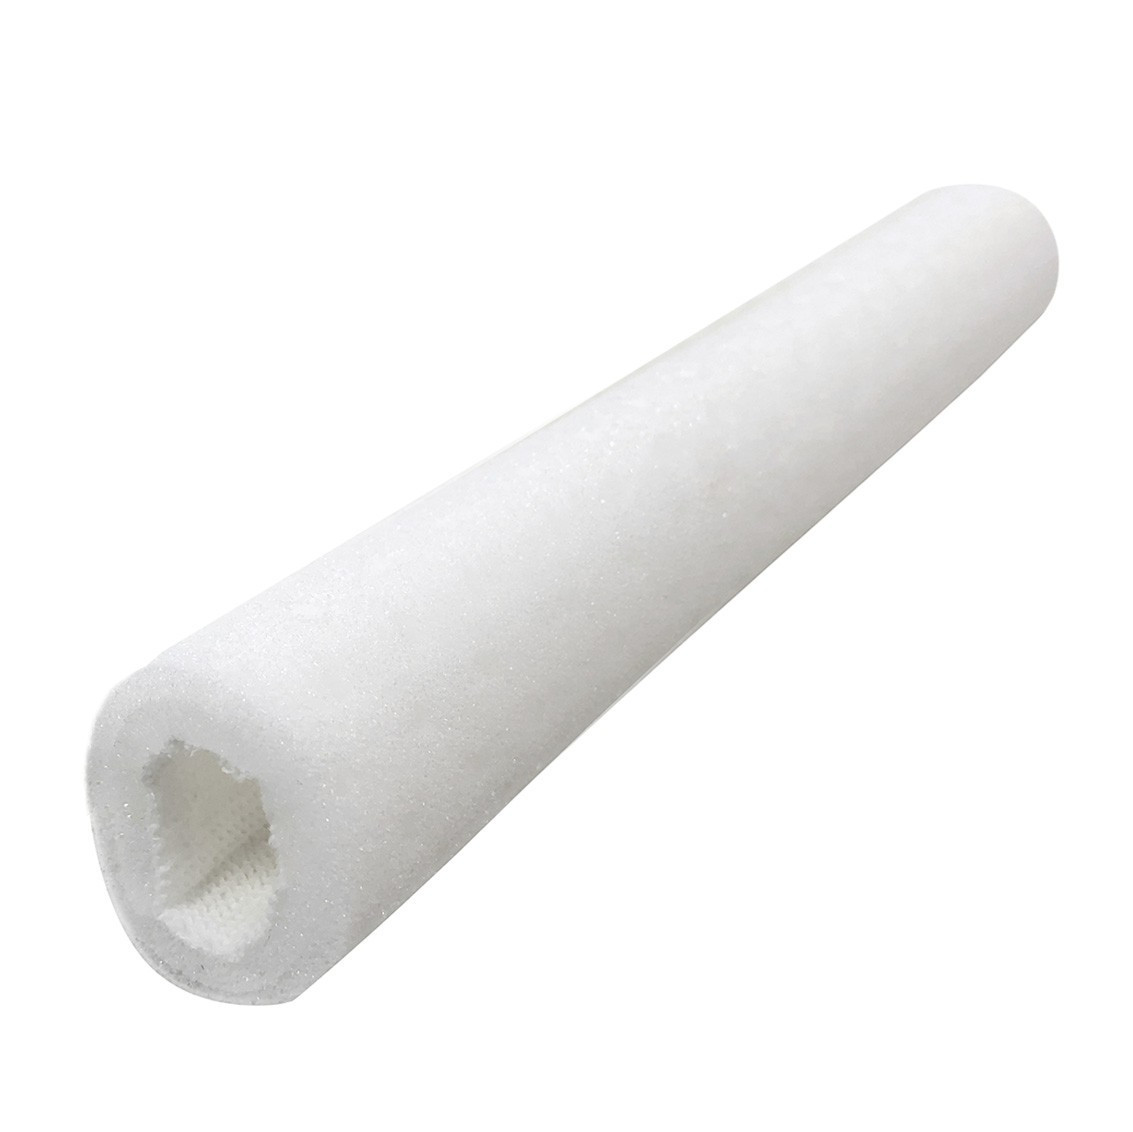 T-Air Foam Protection tubulaire perforée double couche 15 mm 10 pc